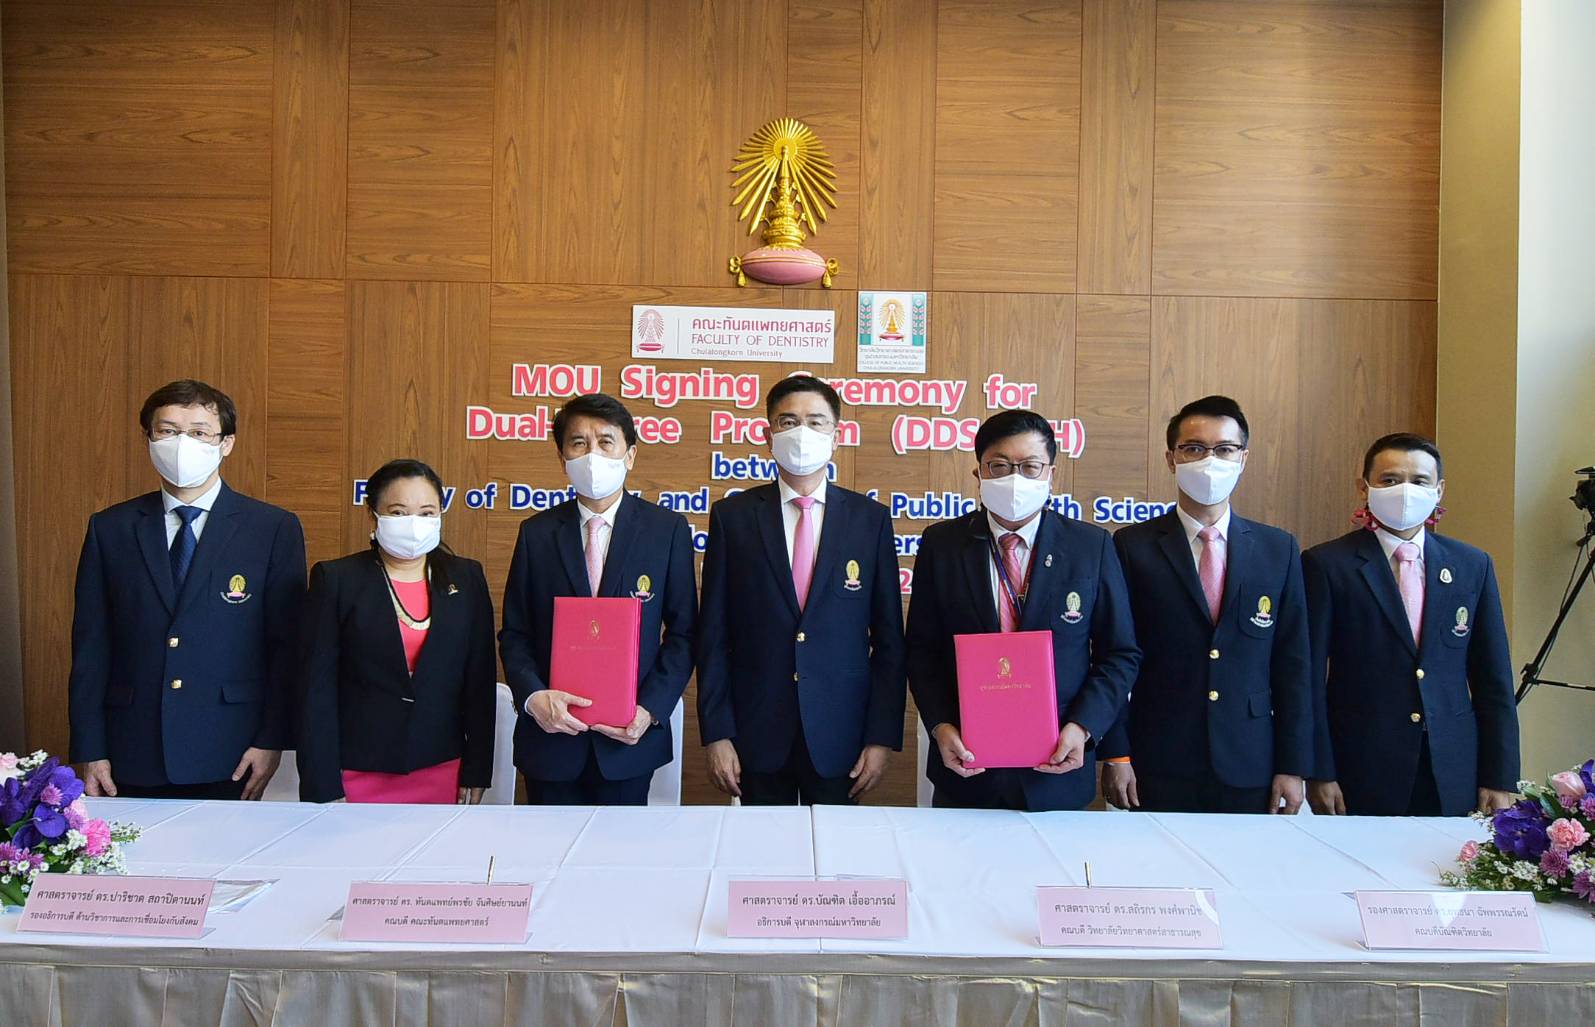 จุฬาฯ เปิดหลักสูตรควบข้ามระดับ ทันตแพทยศาสตรบัณฑิตและสาธารณสุขศาสตรมหาบัณฑิต หลักสูตรแรกในไทย